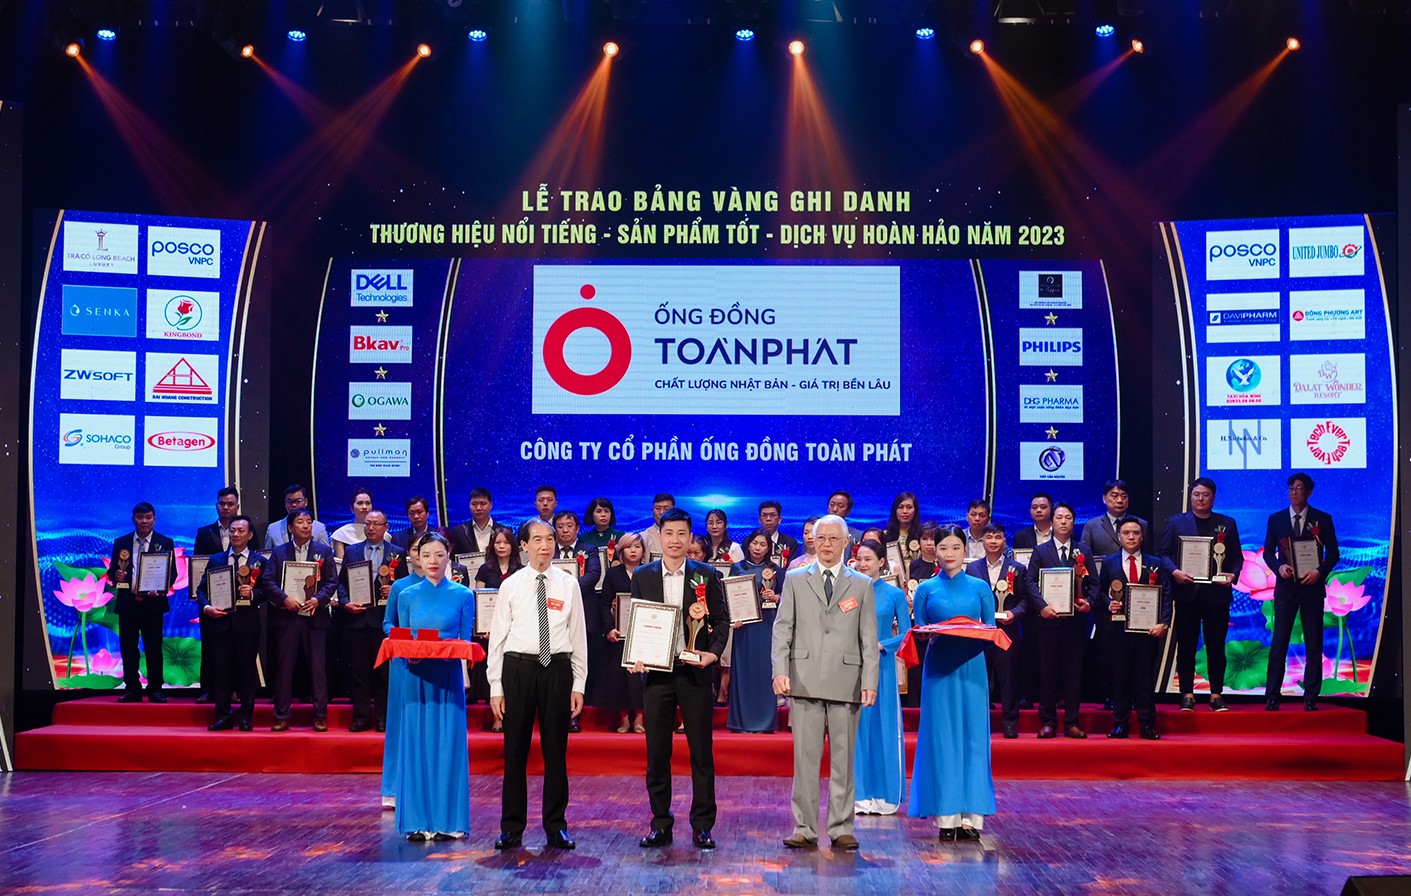 Ông Vũ Minh Tuấn – Giám đốc nhà máy Toàn Phát nhận cúp và chứng nhận tại Lễ trao bảng vàng ghi danh Thương hiệu nổi tiếng – Sản phẩm tốt – Dịch vụ hoàn hảo năm 2023